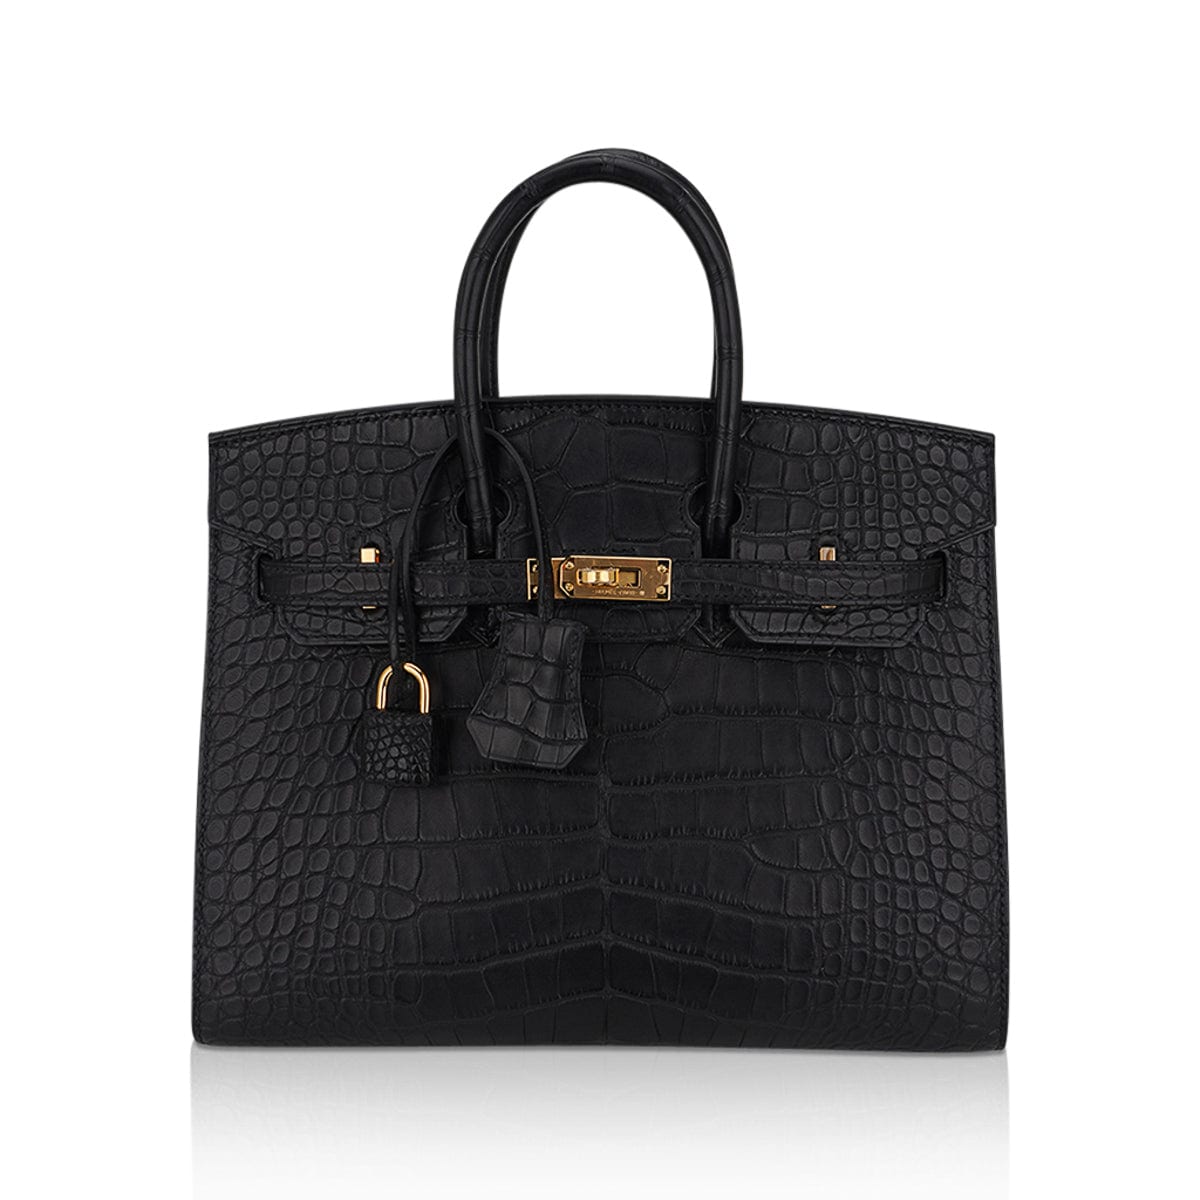 Hermes Birkin 25 Sellier Bag in Black Matte Alligator with Gold